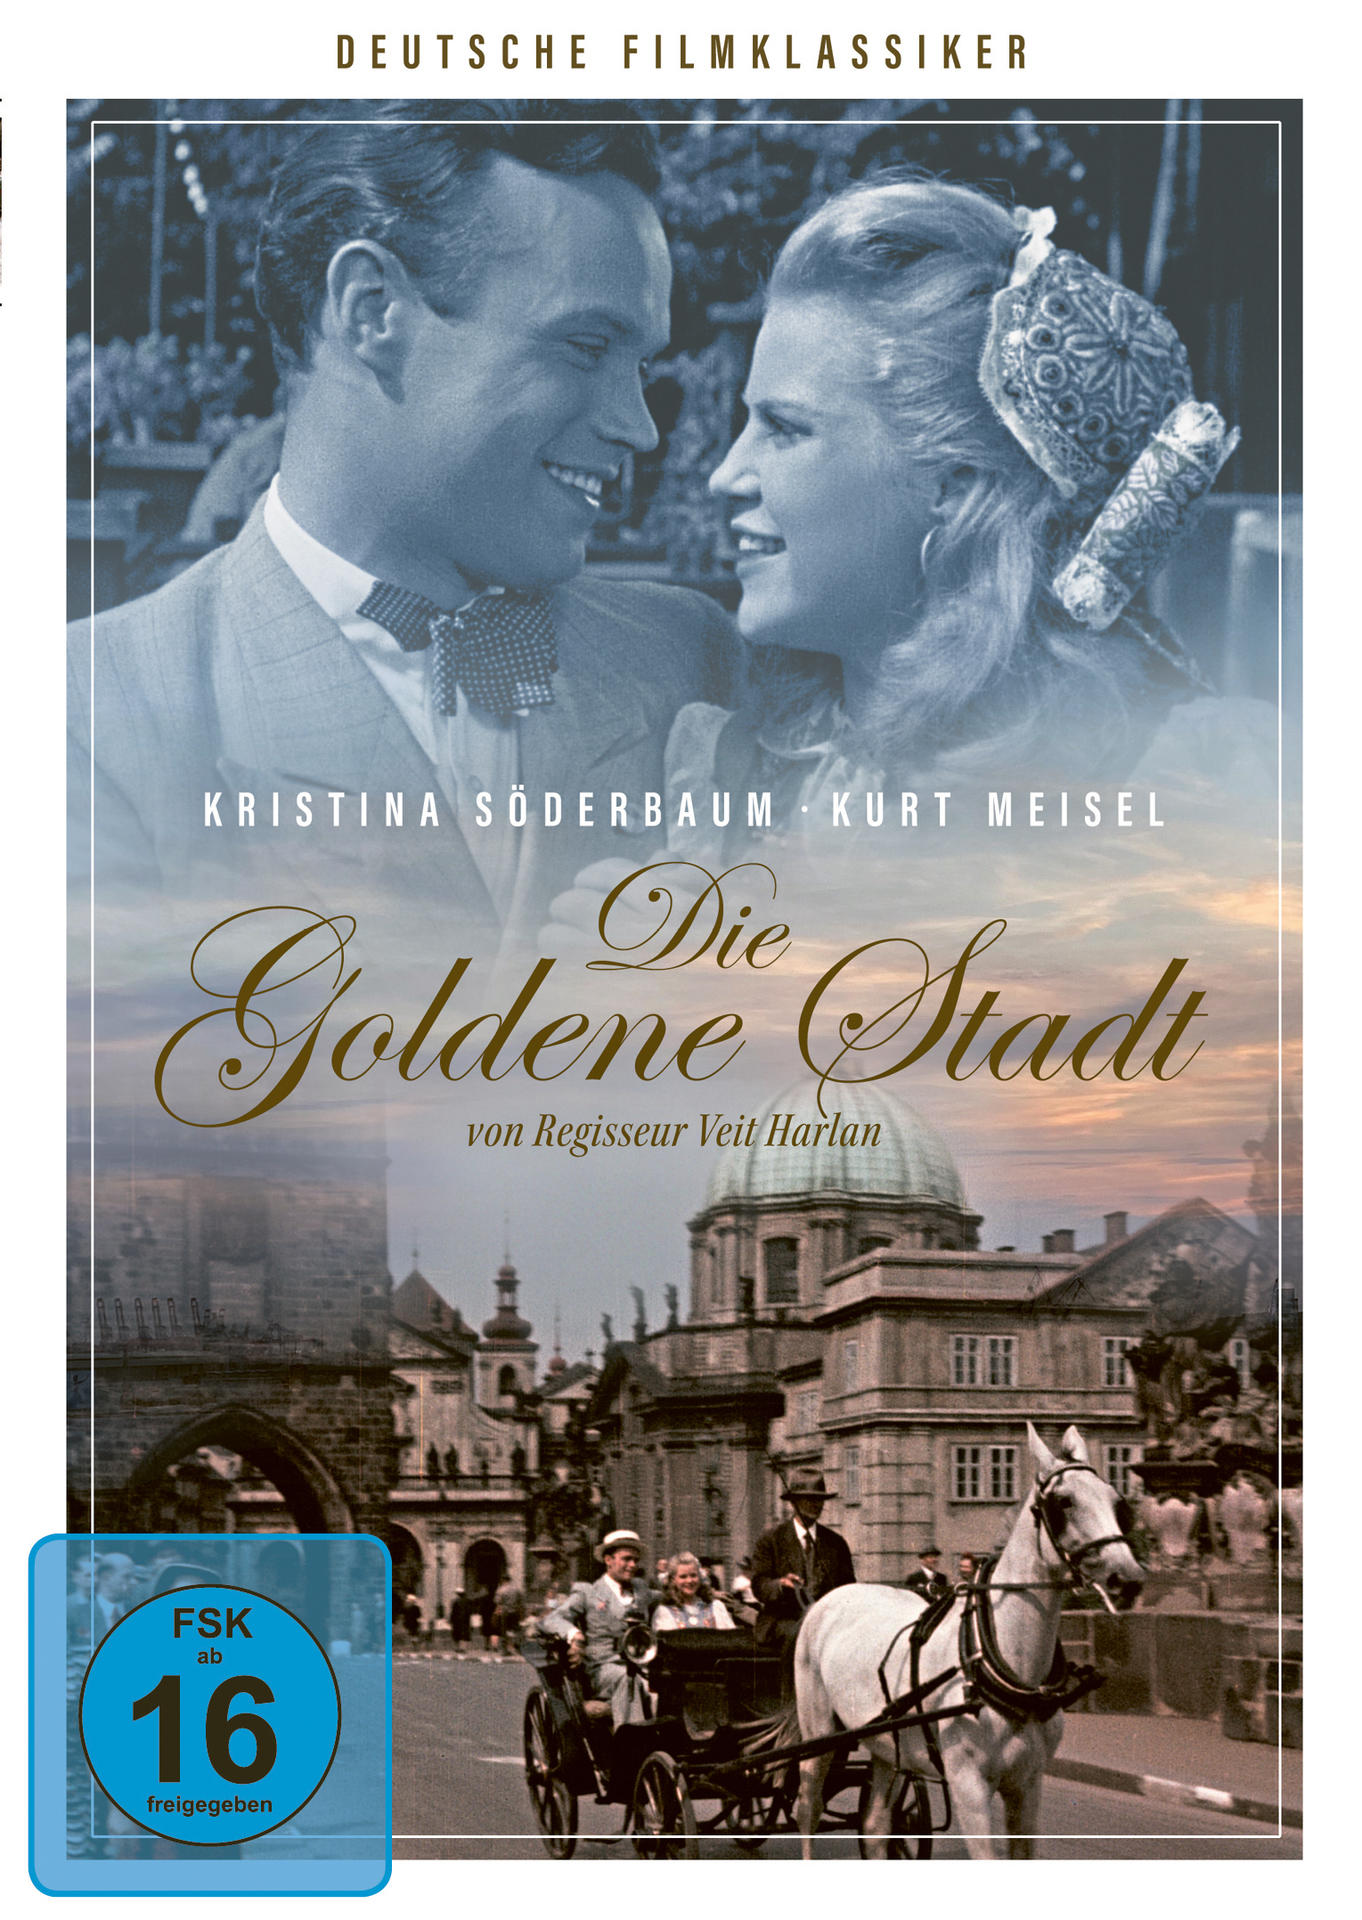 DVD goldene Stadt Die